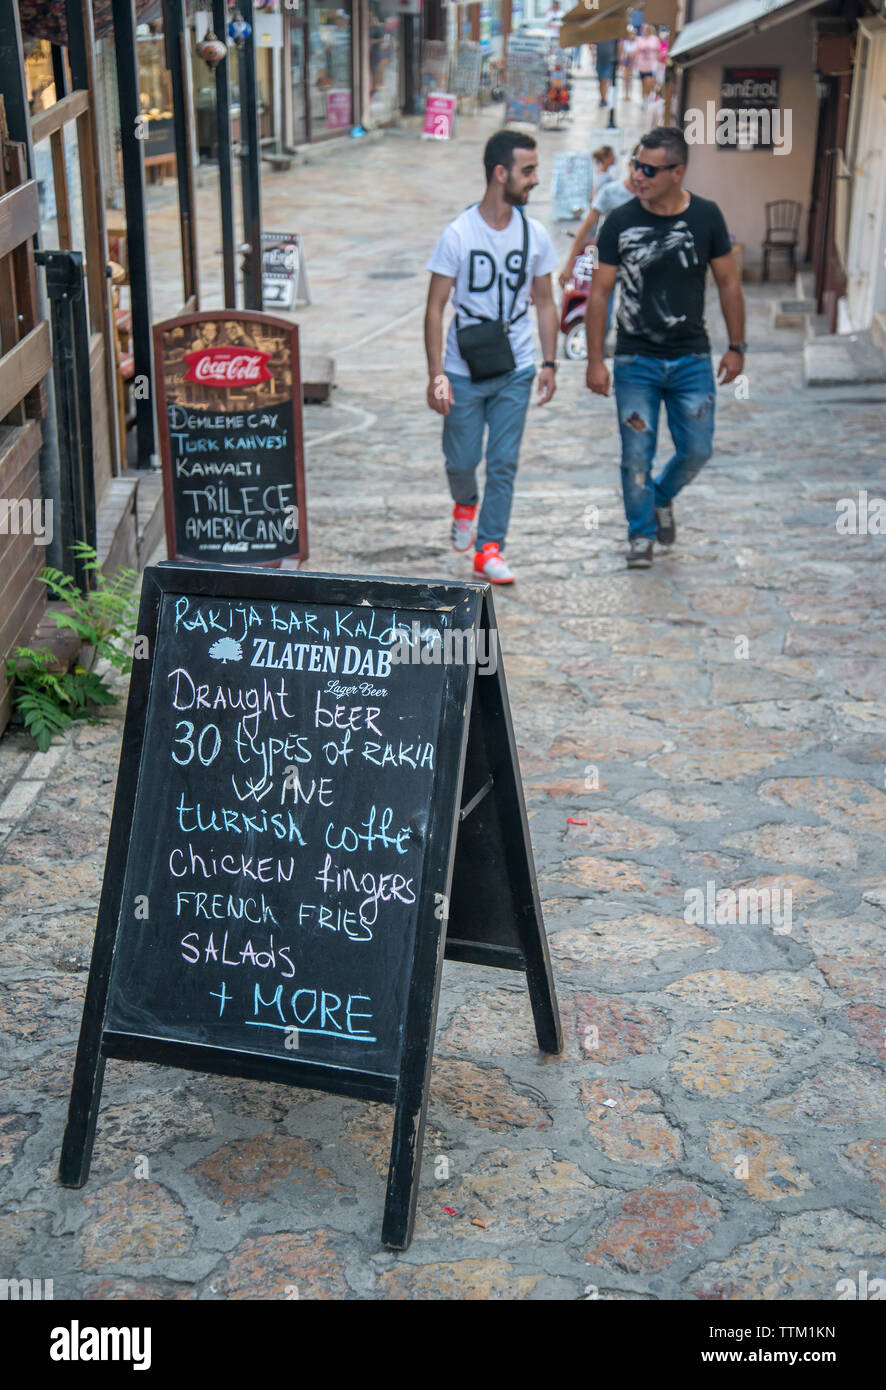 Deux hommes s'approchent d'un conseil de la chaussée à l'extérieur d'un bar/restaurant de la nourriture et des boissons, de la publicité sur une rue étroite dans la zone vieux bazar de Skopje. Banque D'Images